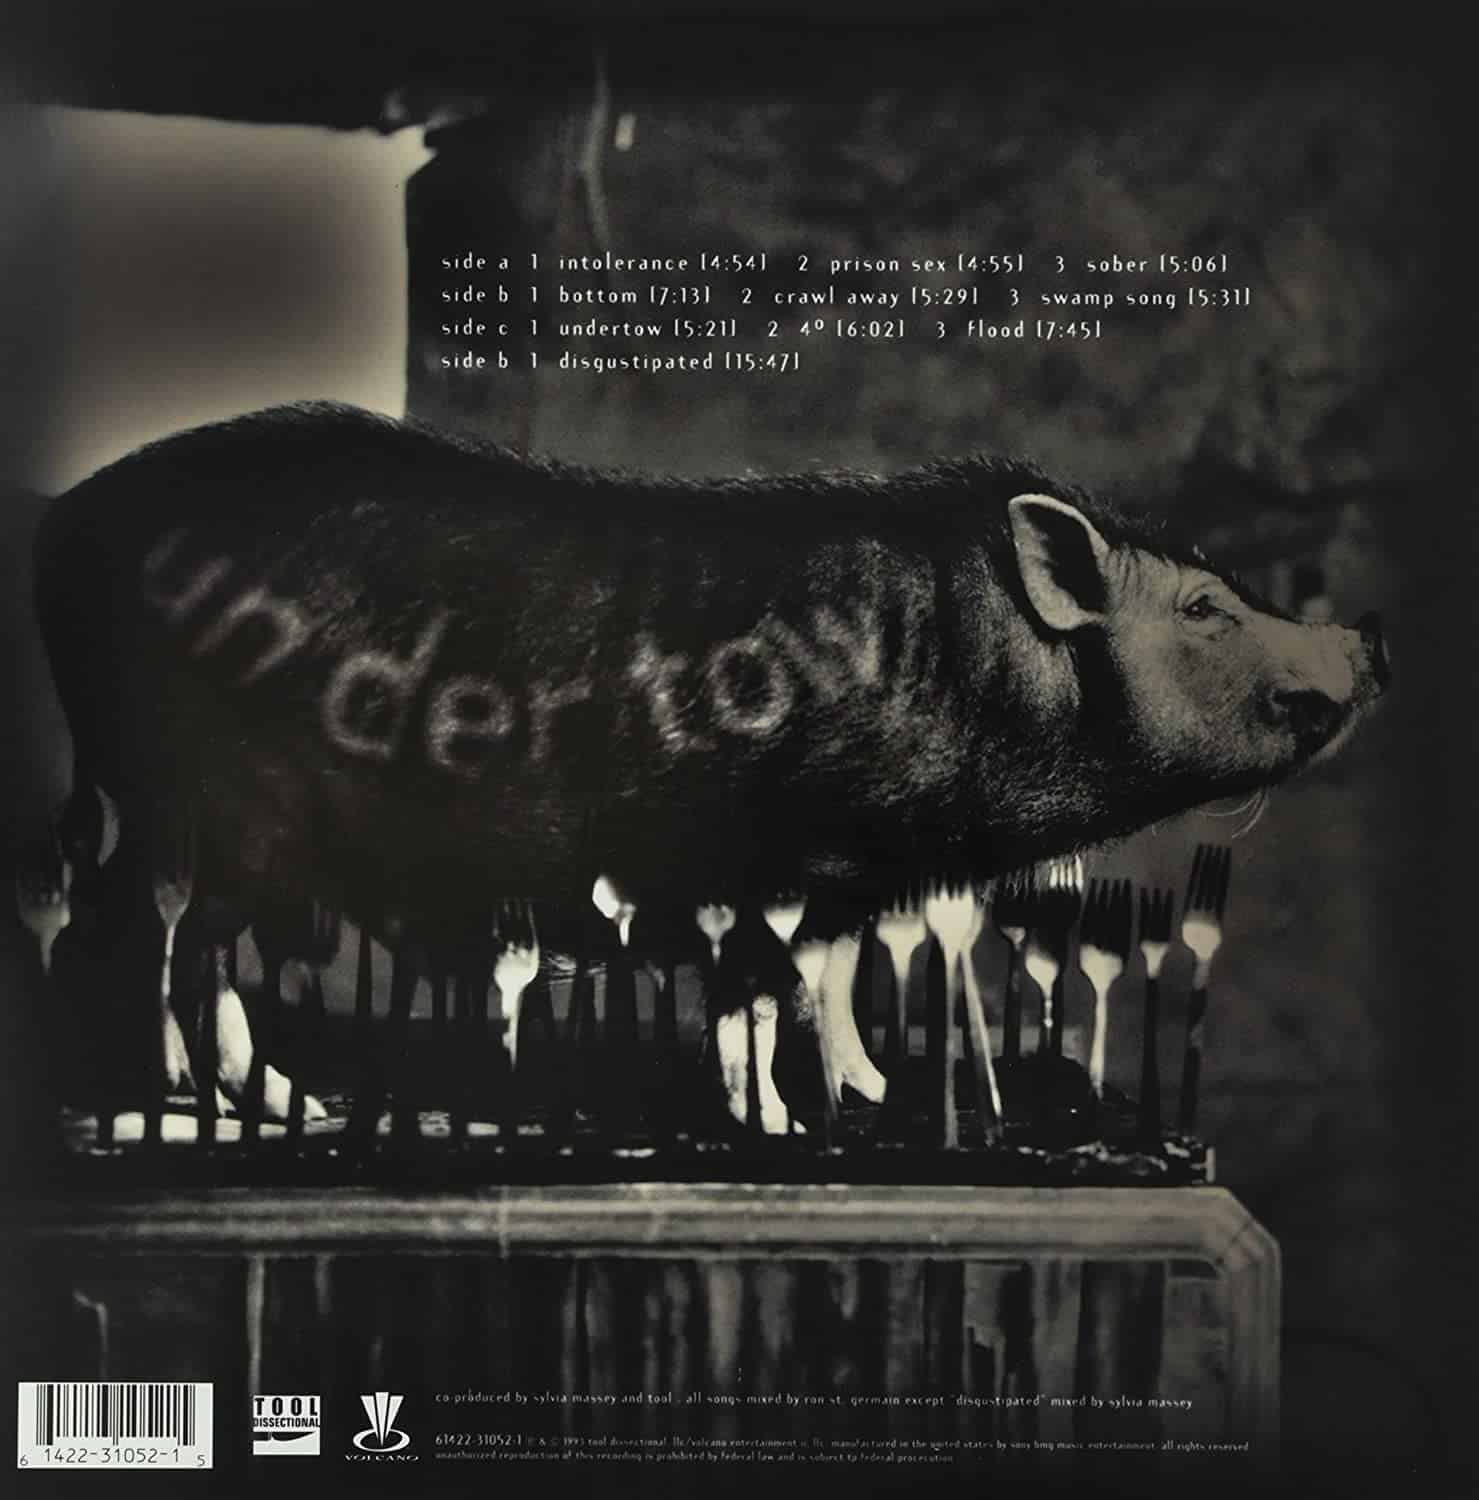 Tool-Undertow-vinyl-record-album2